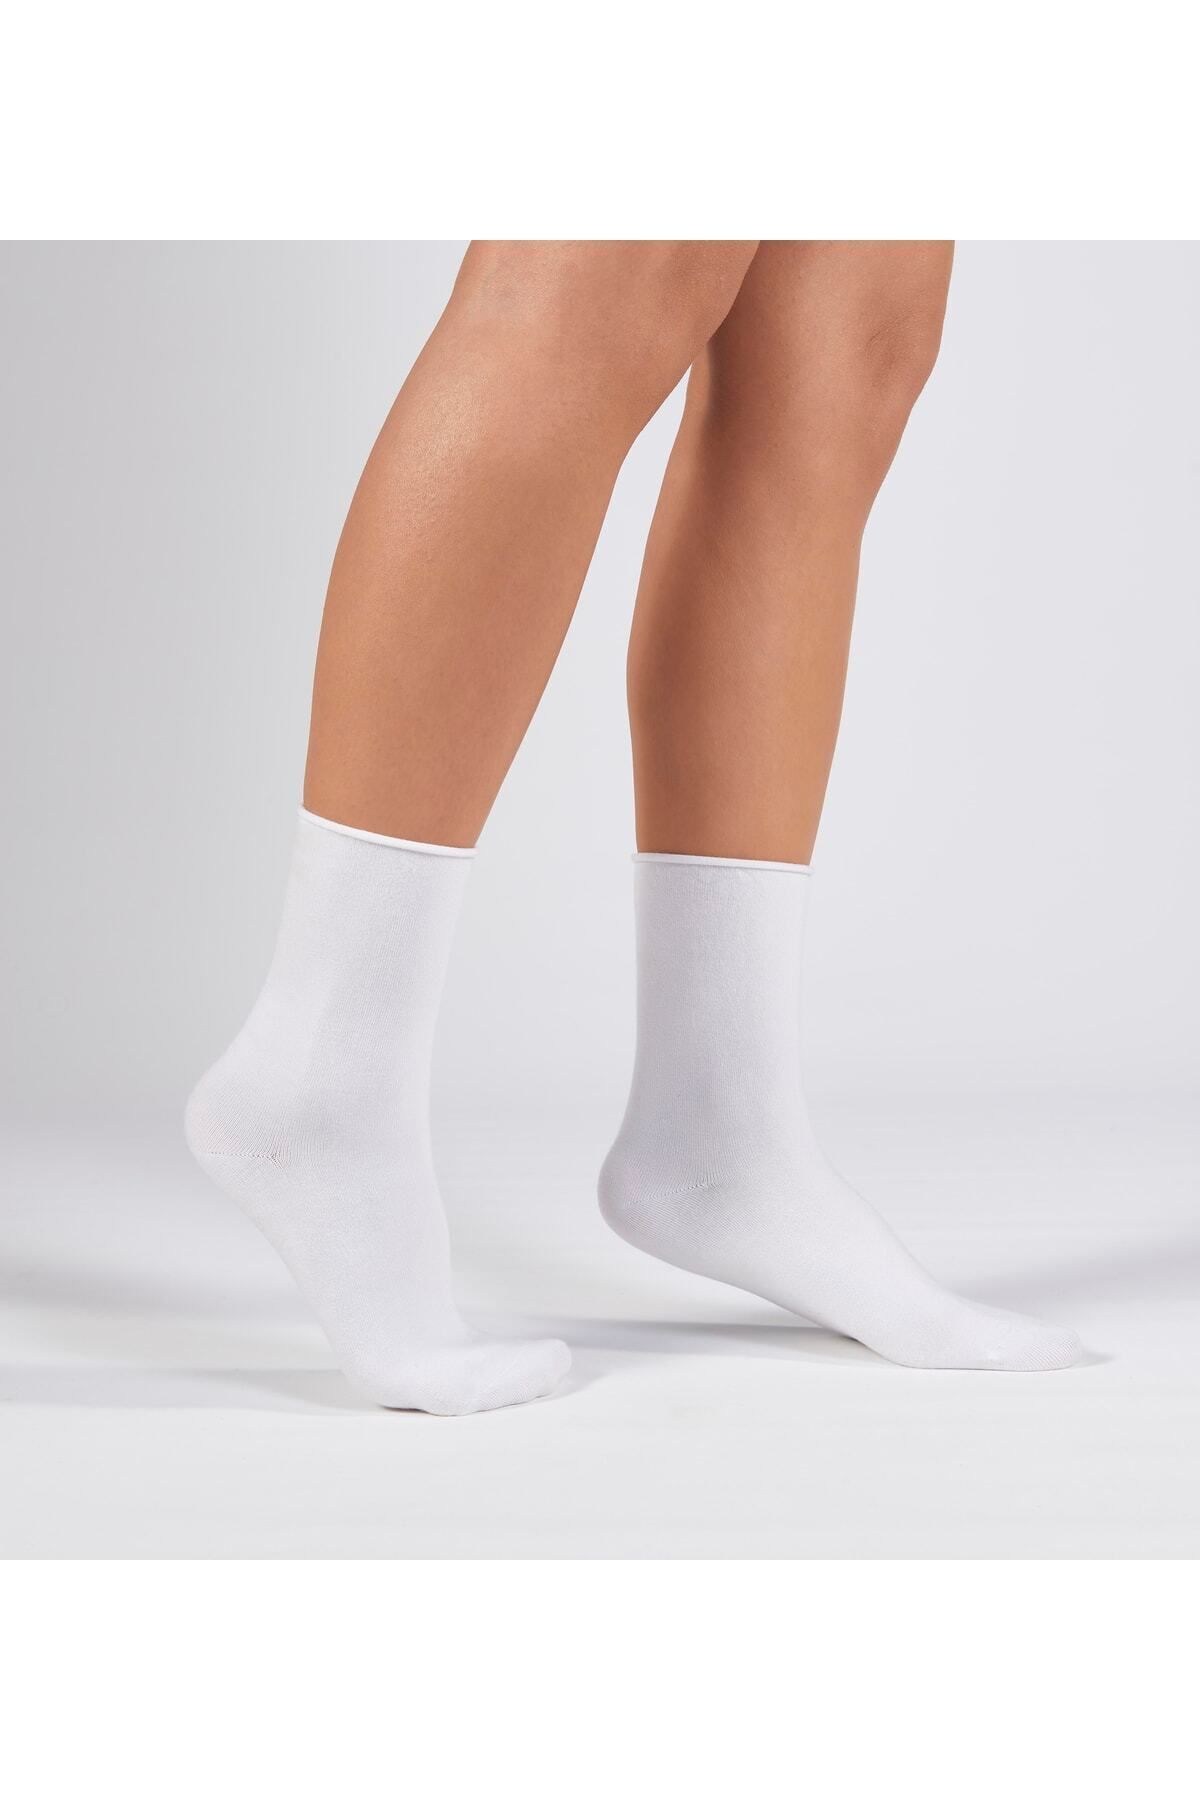 Forwena Beyaz Modal Lastiksiz Dikişsiz Kadın Soket Çorap